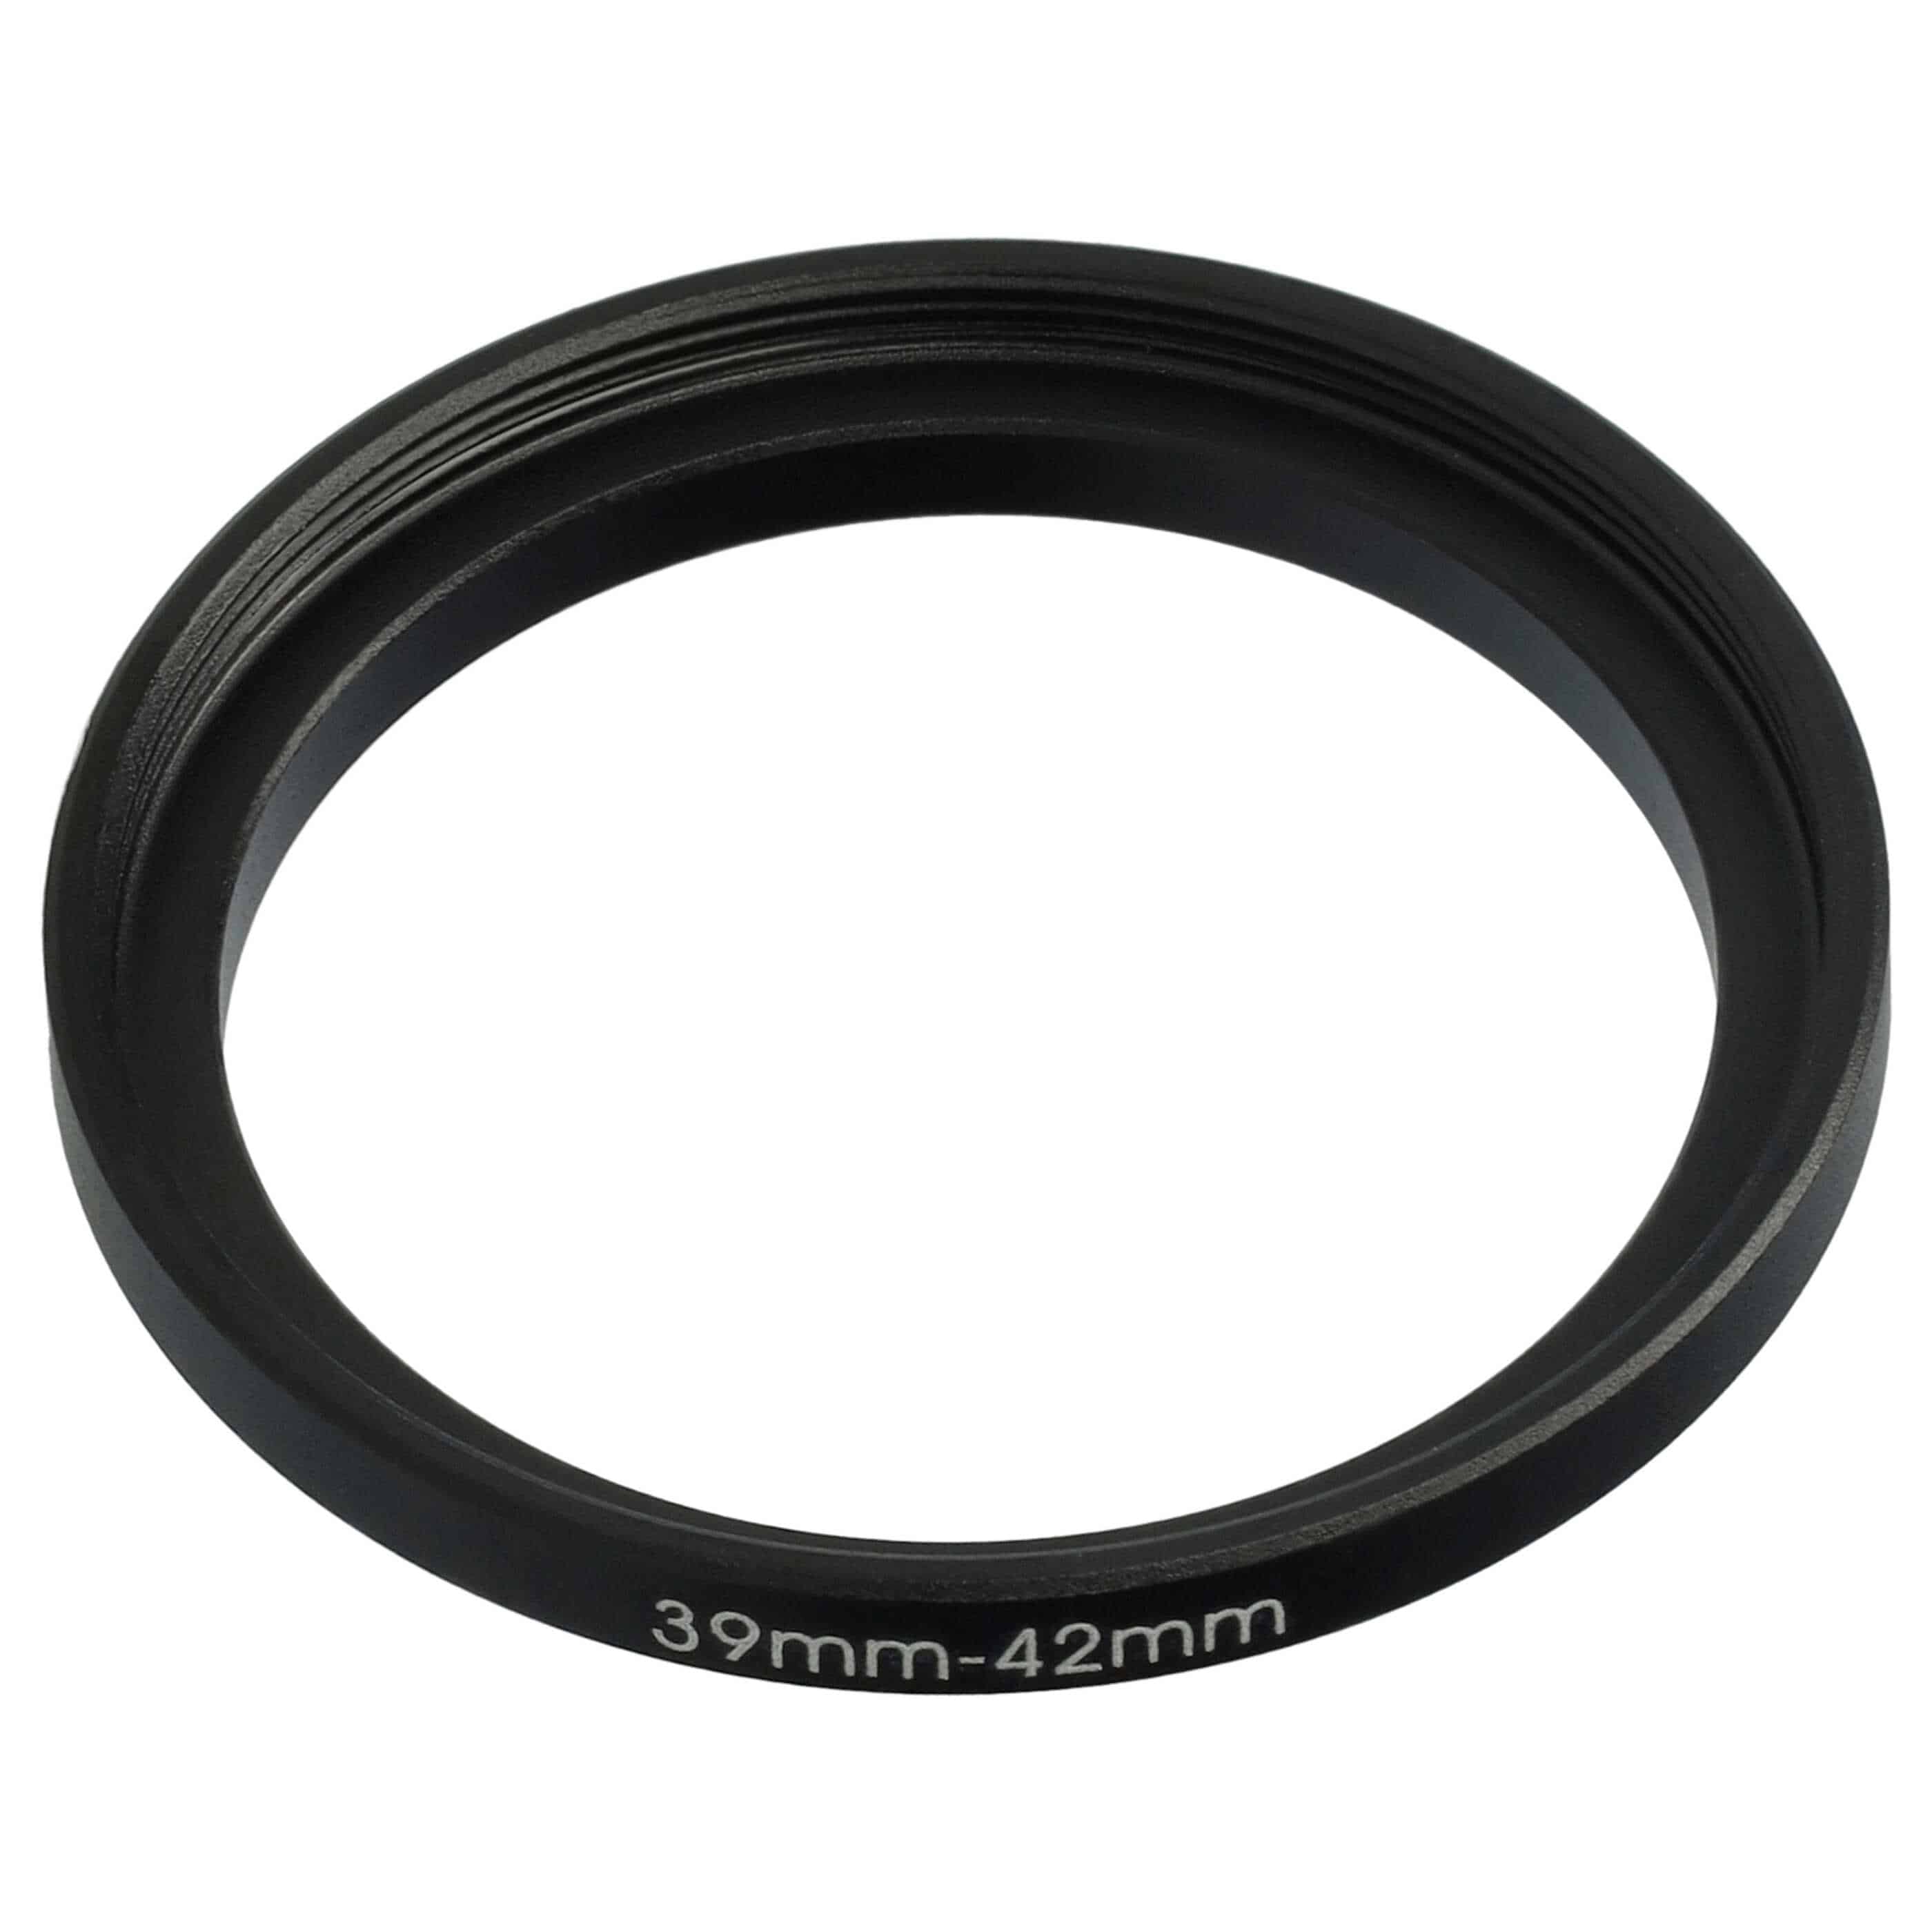 Step-Up-Ring Adapter 39 mm auf 42 mm passend für diverse Kamera-Objektive - Filteradapter